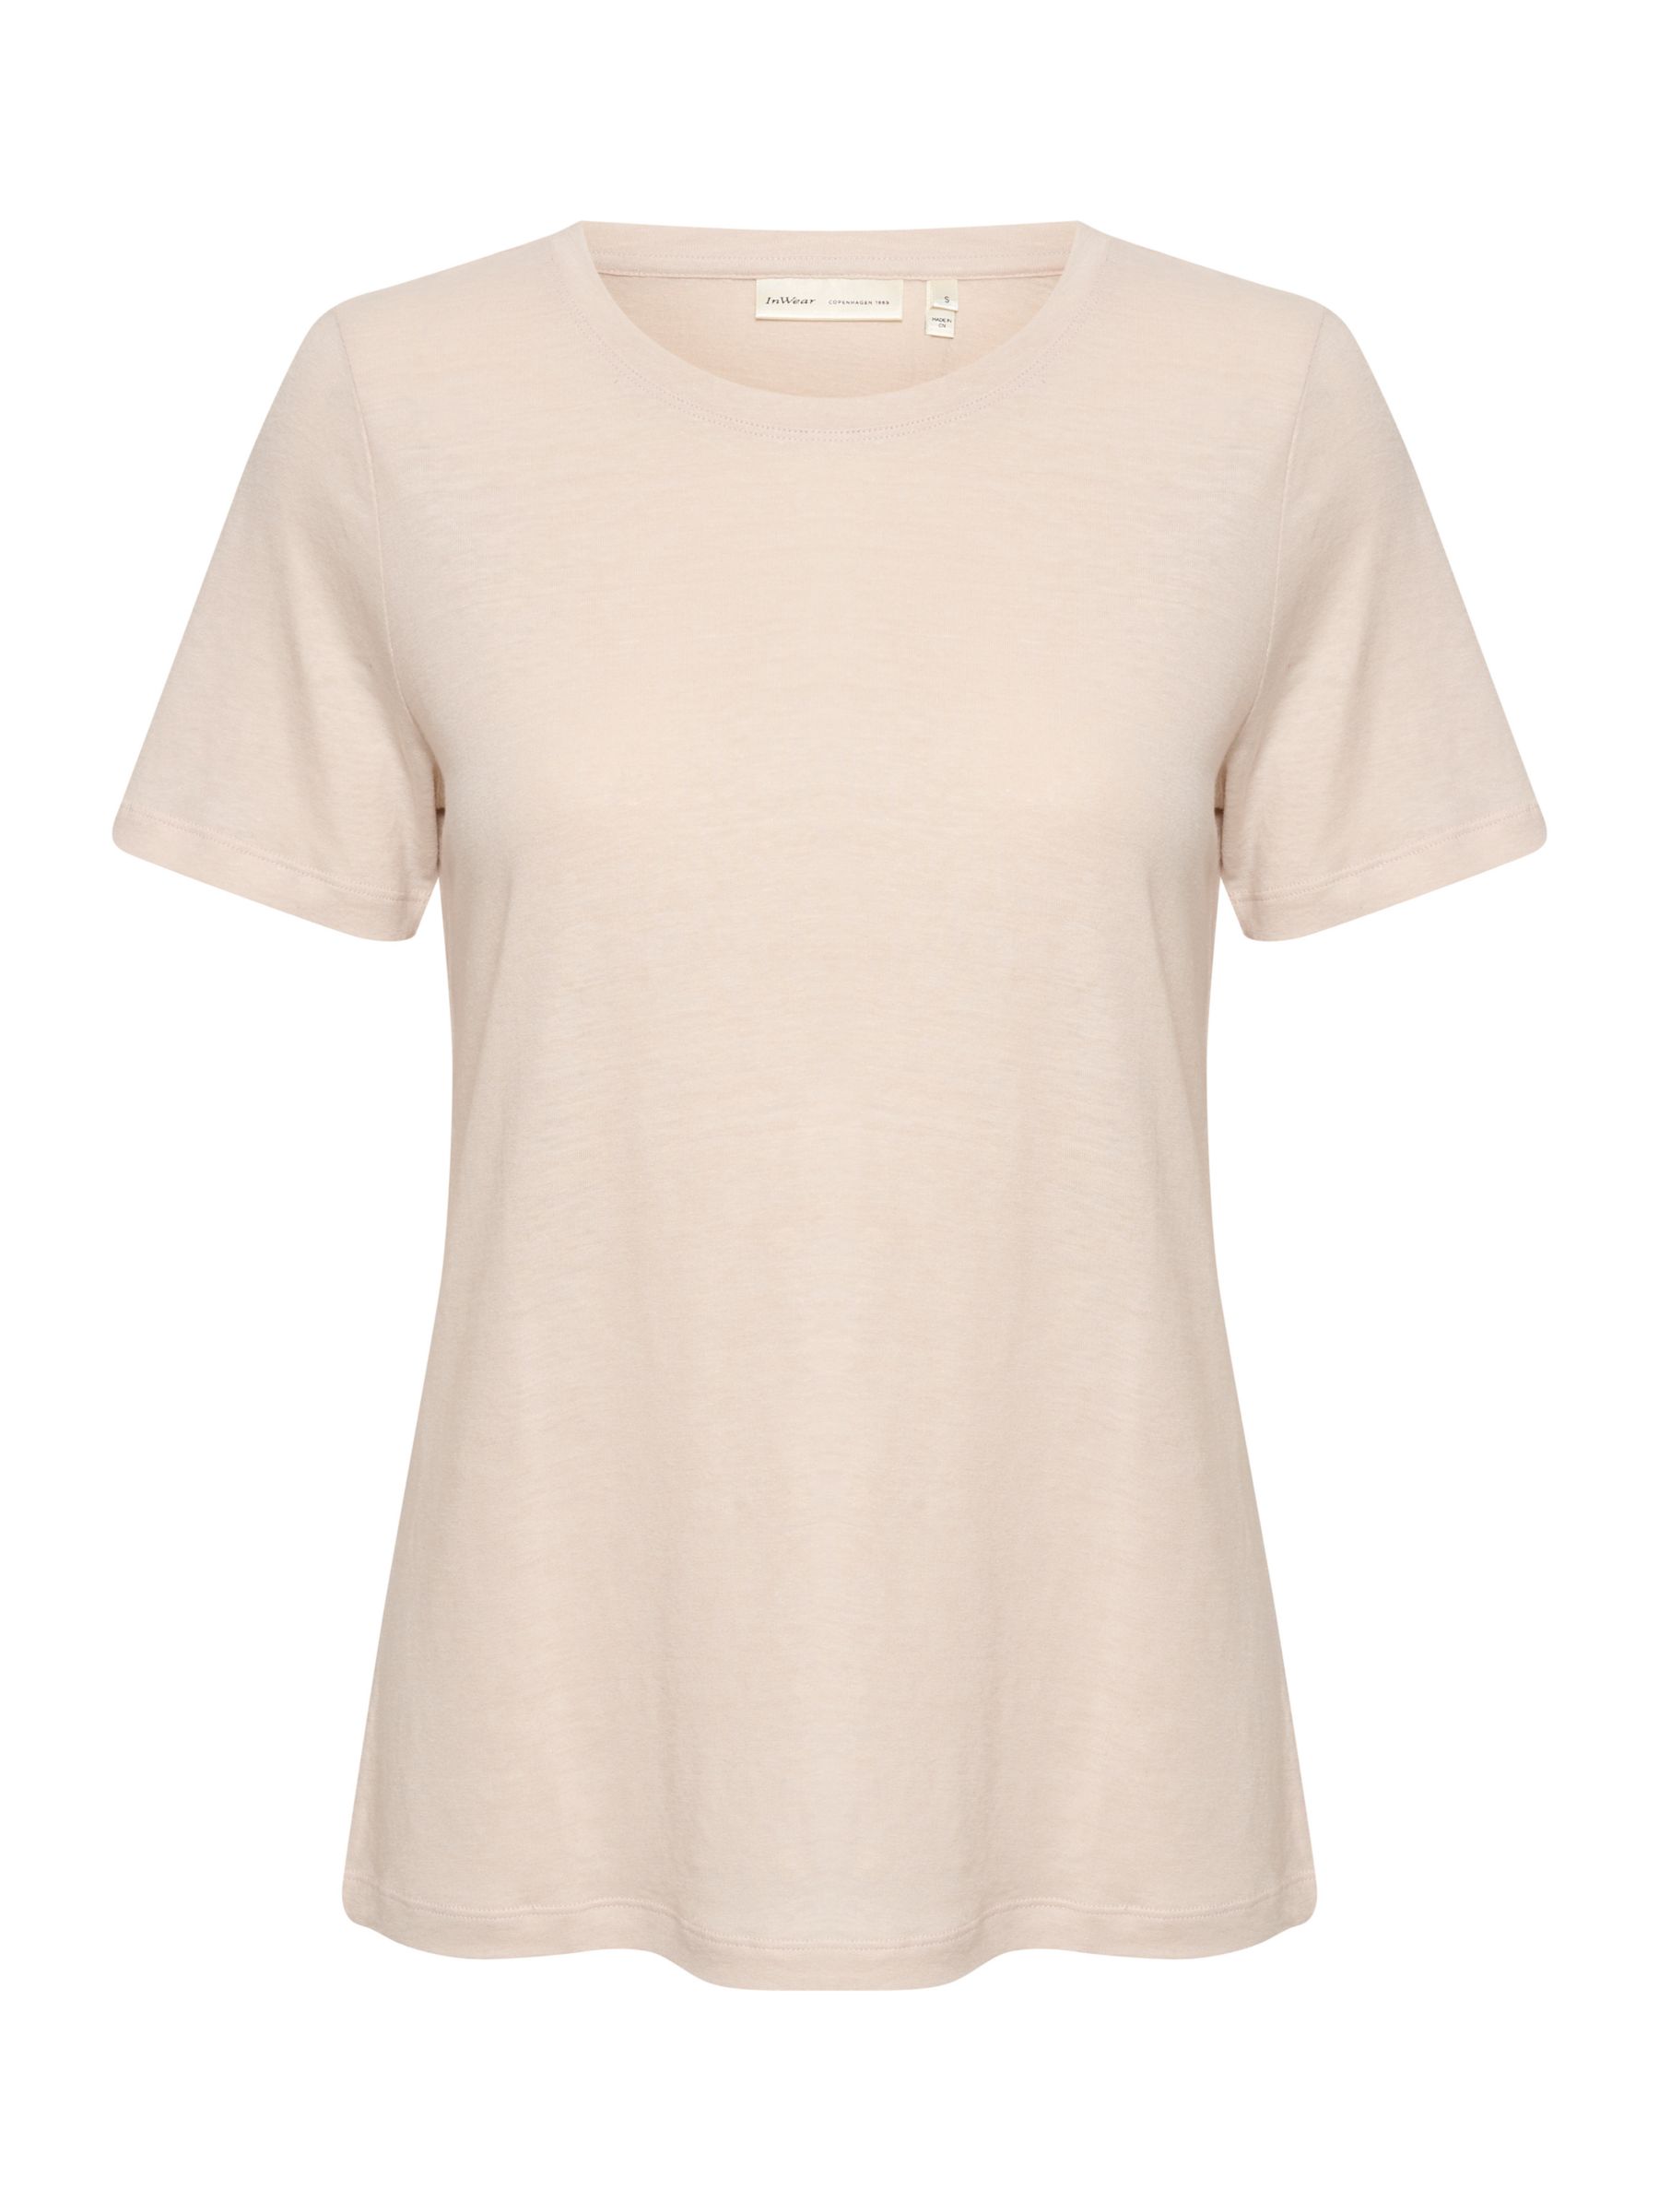 InWear Elisabeth Linen Blend Short Sleeve T-shirt, Haze, XS